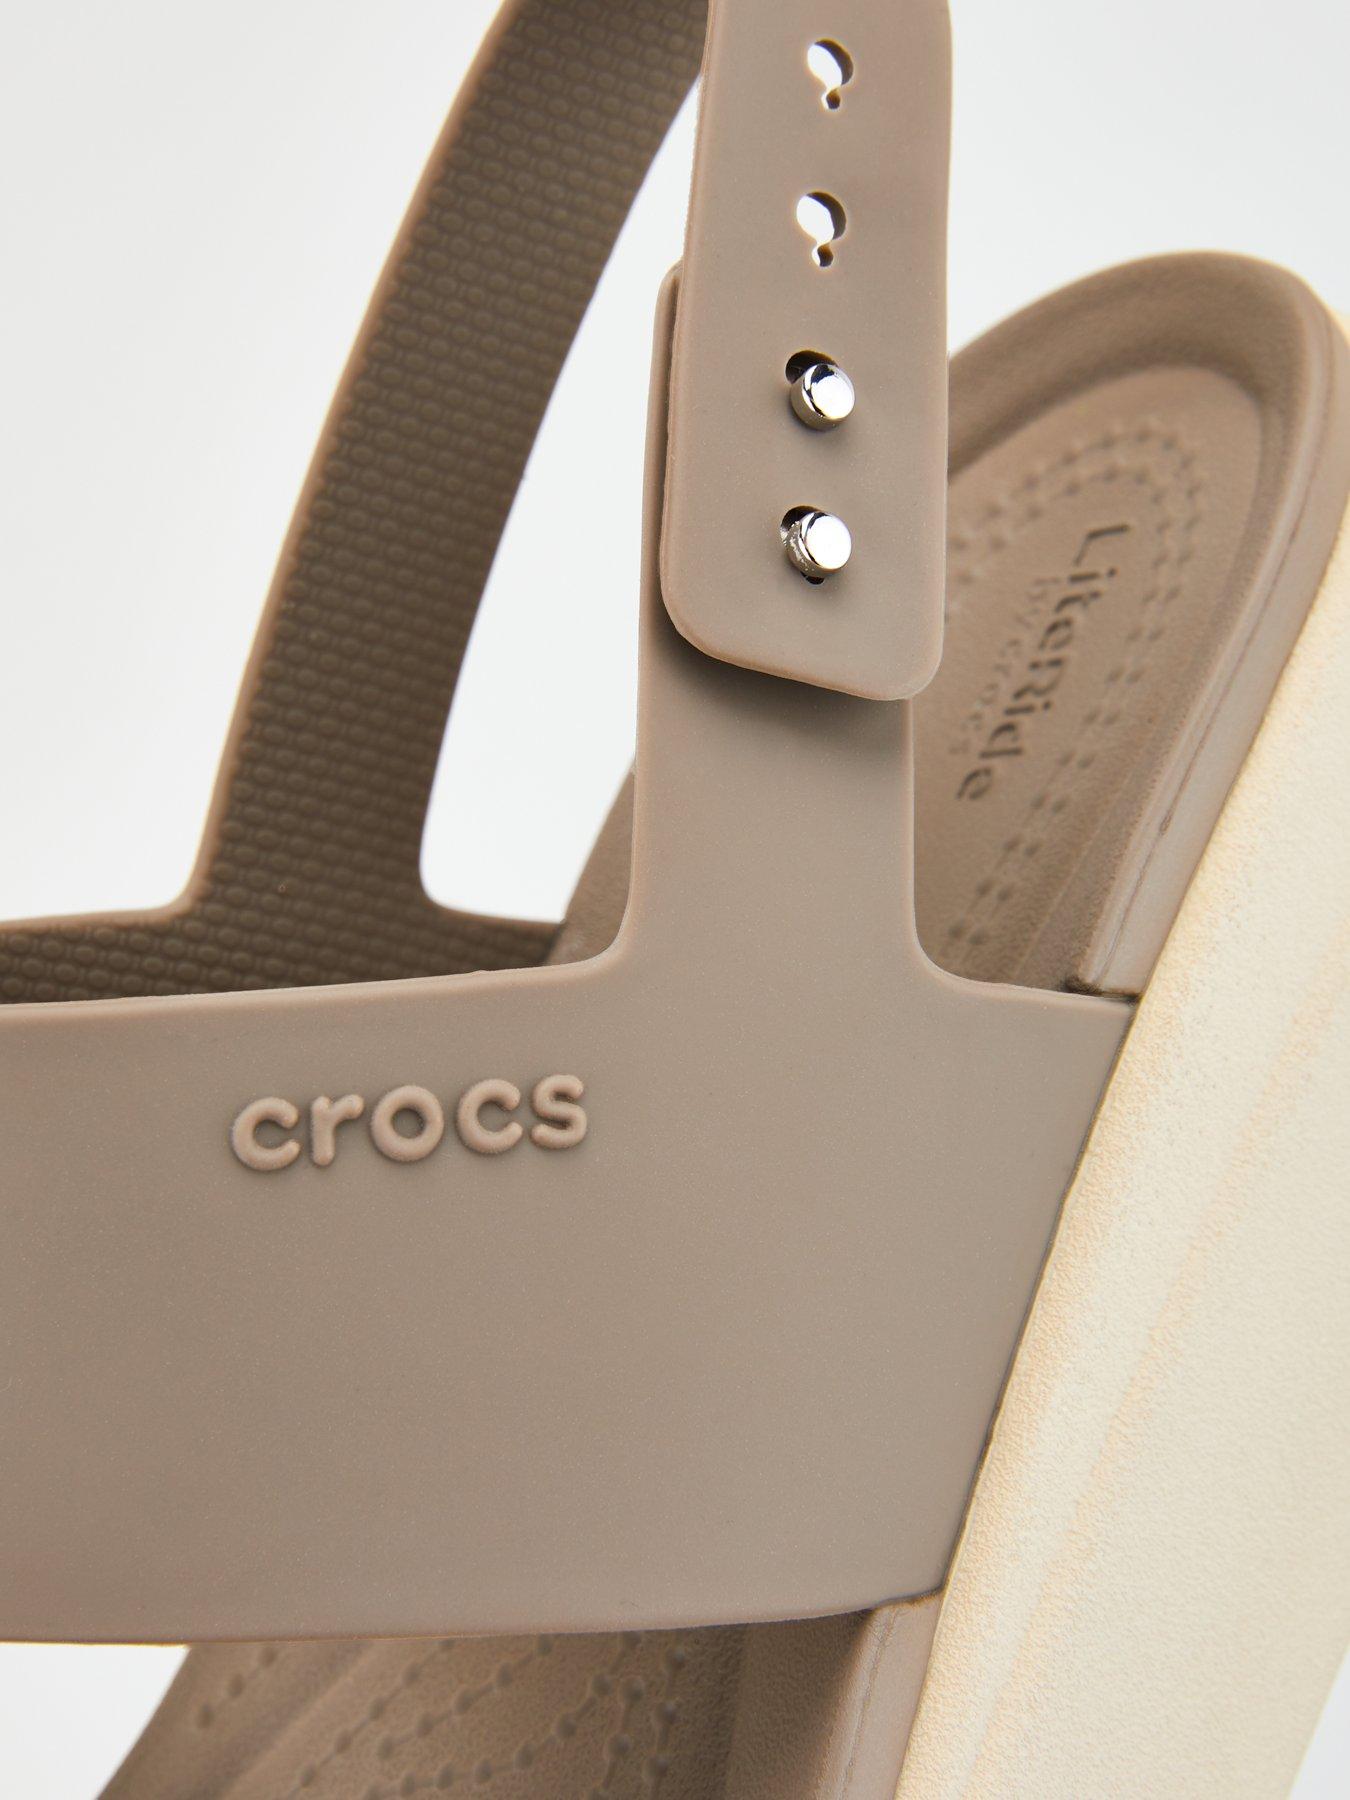 crocs wedges uk